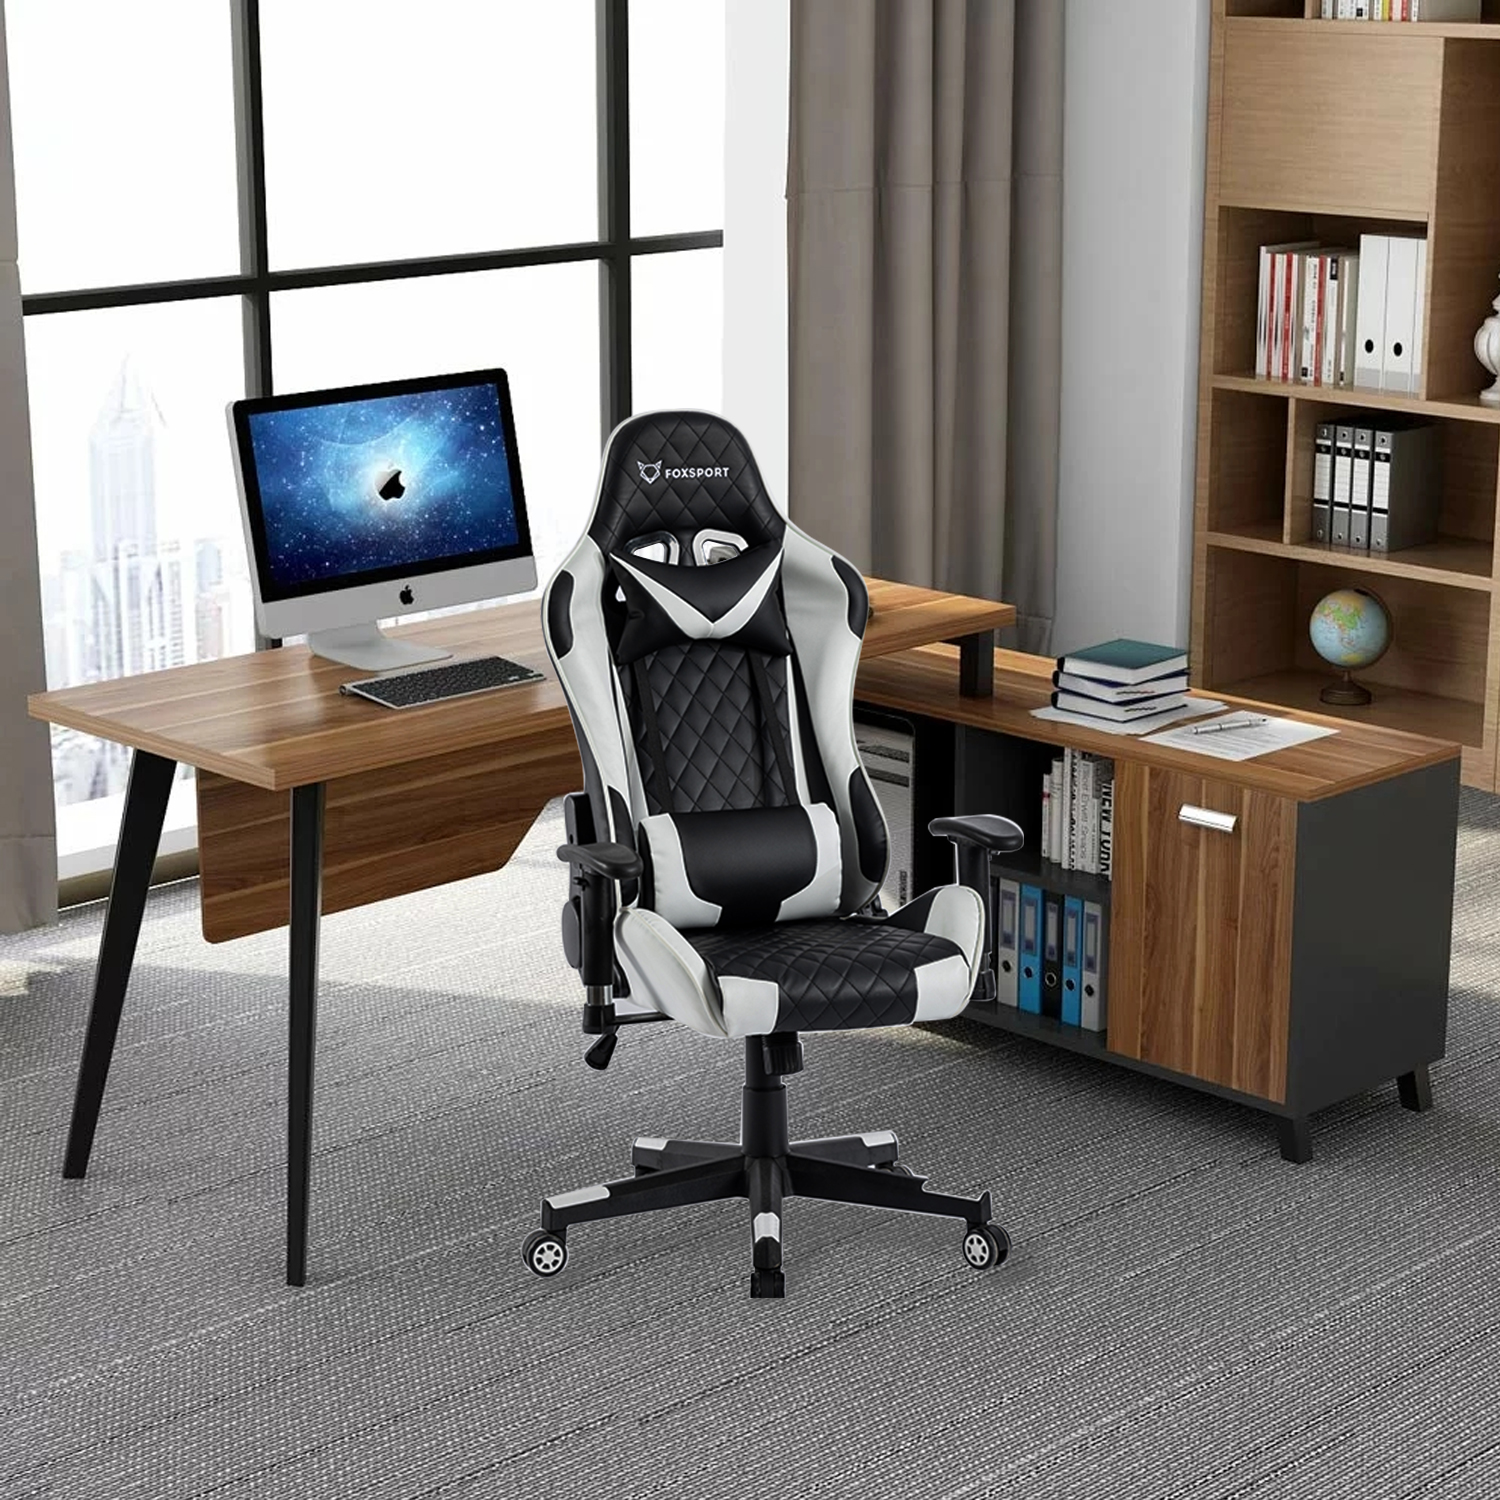 Schwarz/Weiß professioneller weiß Stuhl, Gaming-Stuhl, Gaming Verstellbarer FOXSPORT Bürostuhl,